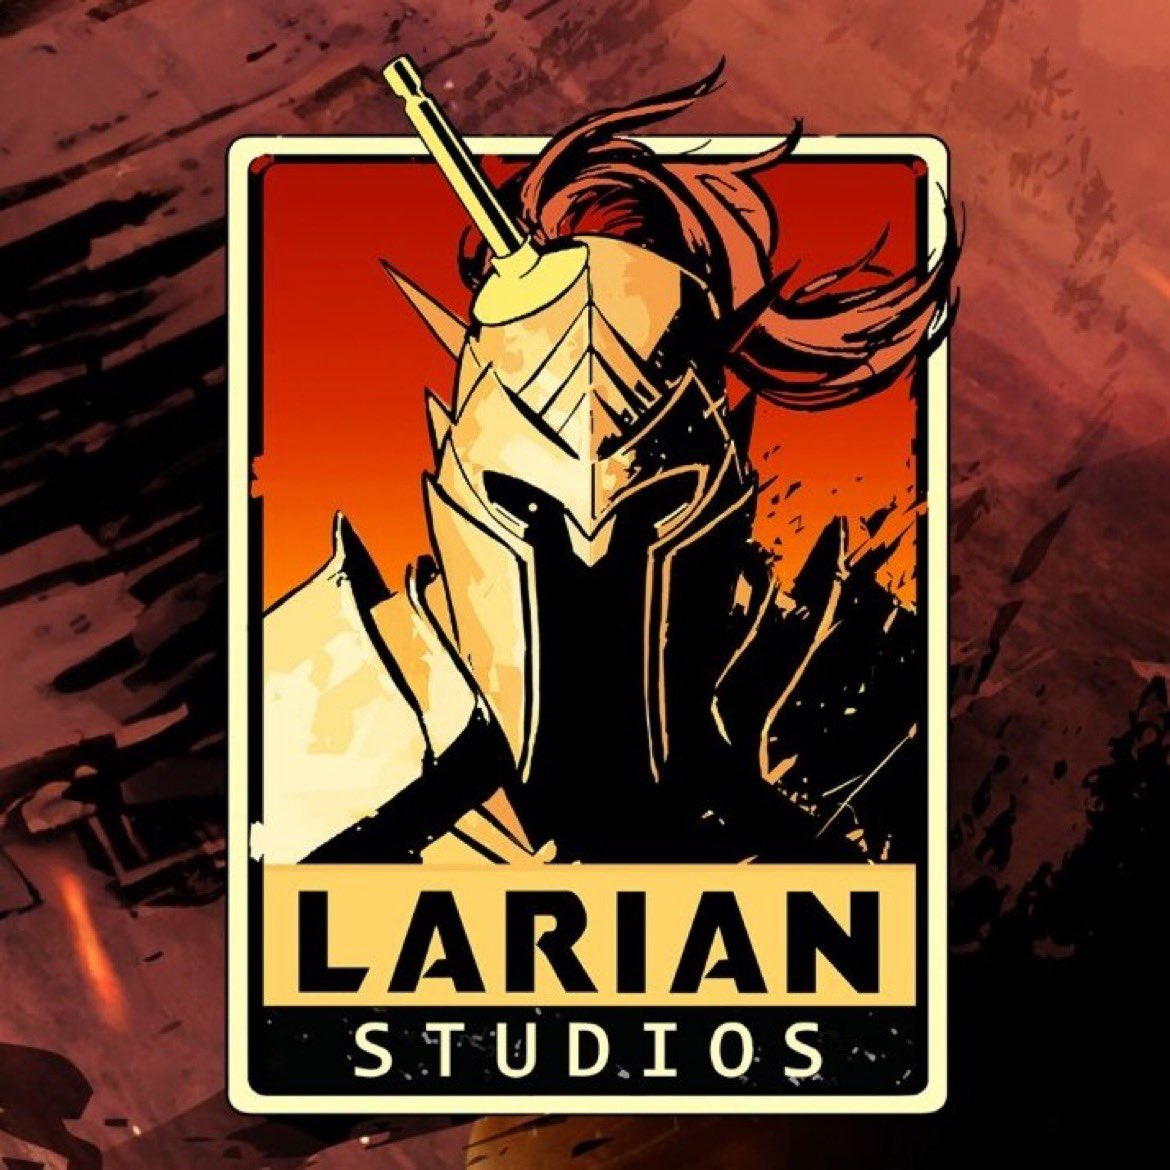 أكدت Larian Studios أن لديها لعبتين جديدتين قيد التطوير بناء على عناوينها الخاصه بها - سبق و صرحوا بان لا نية لهم باصدار جزء جديد و ولا توسعة متعلقة بلعبة Baldur’s Gate